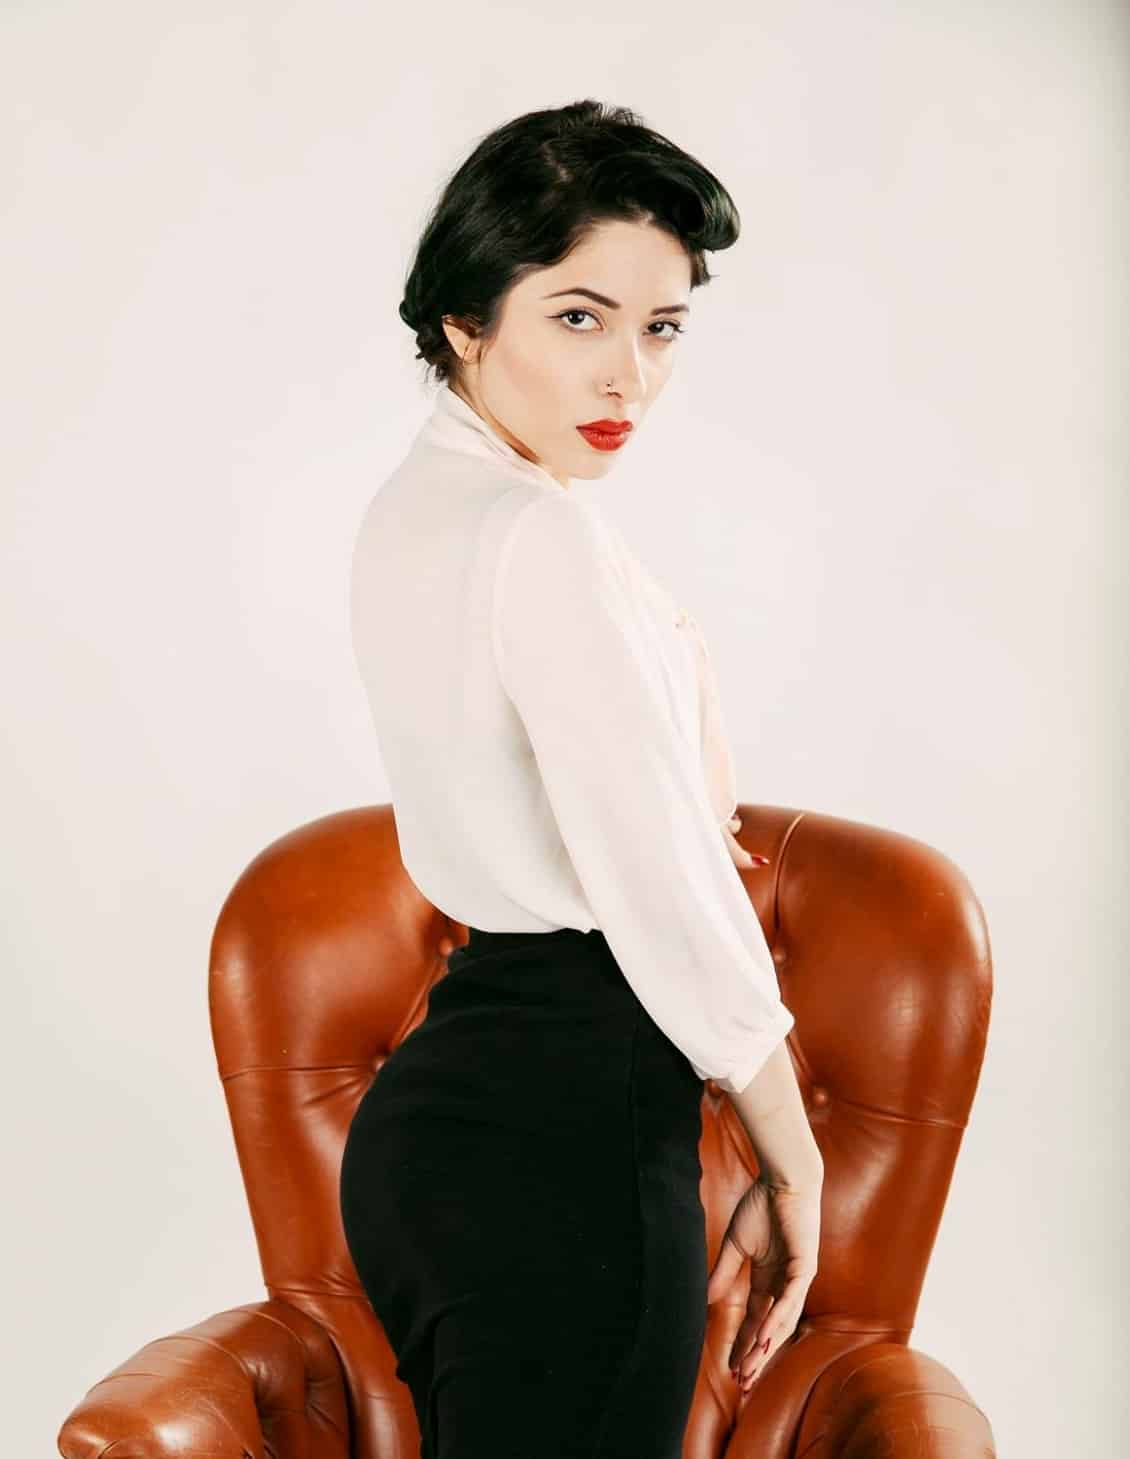 Een professionele portretfotograaf legt het beeld vast van een vrouw in een zwarte rok en een wit overhemd terwijl ze opvallend op een stoel poseert.